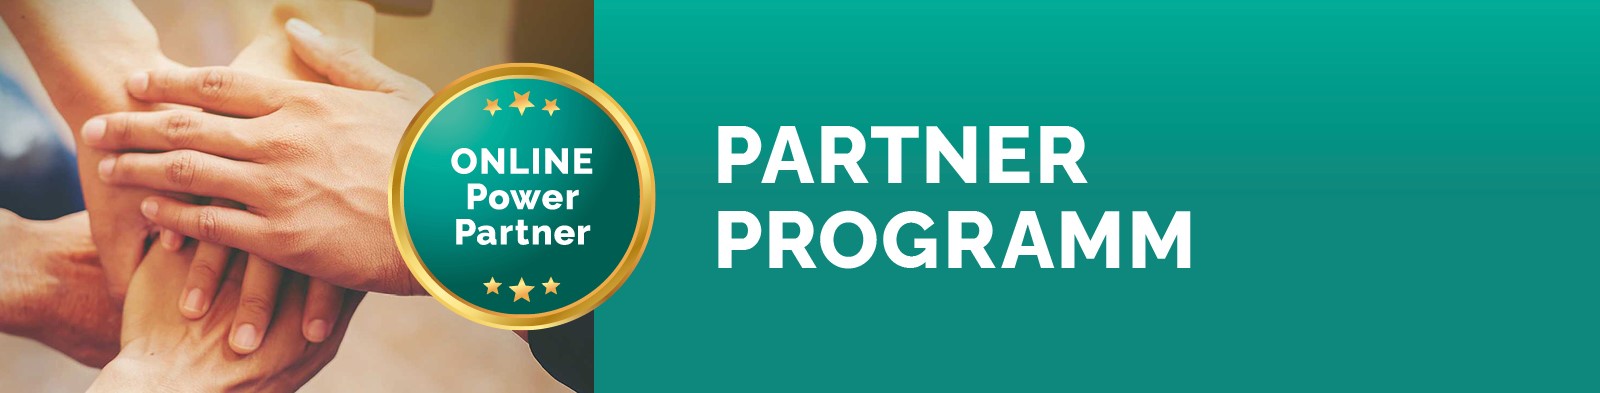 Partner Programm Header